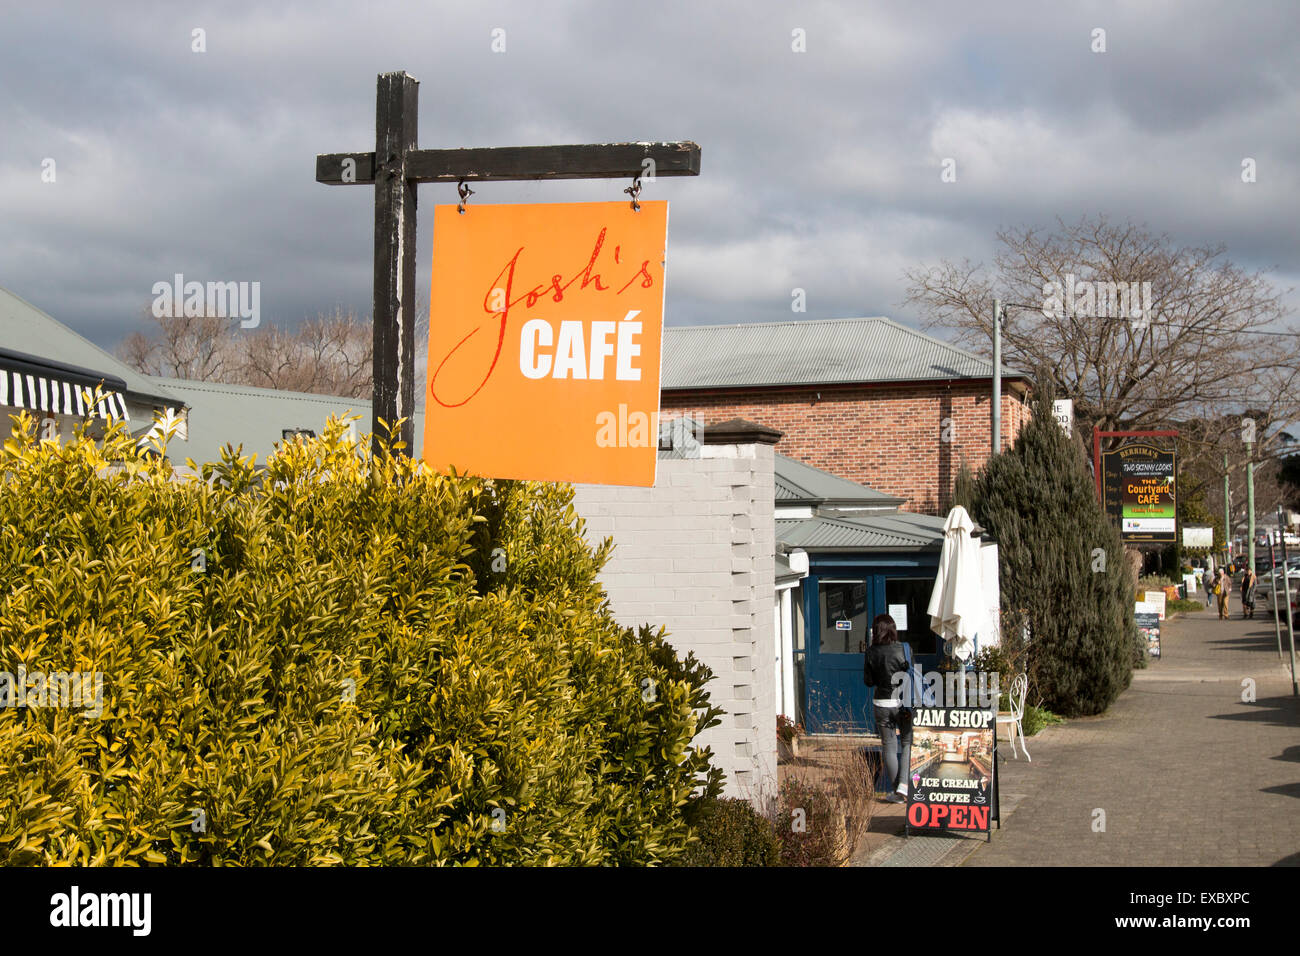 Joshs cafe et un café dans le village historique de Berrima dans les régions rurales de la Galles du Sud, Australie Banque D'Images